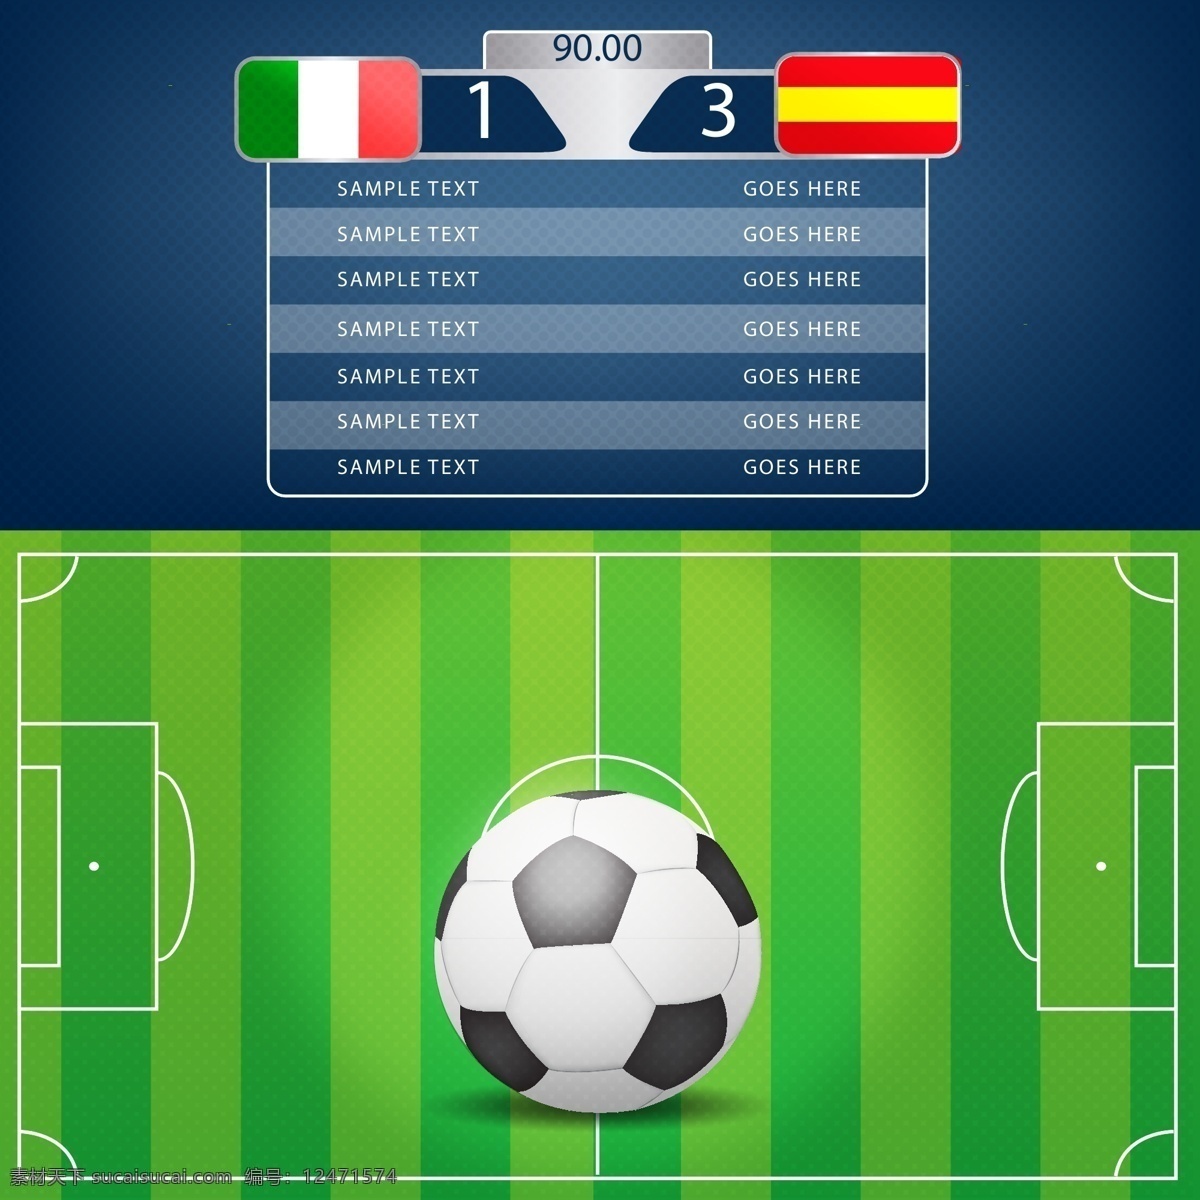 世界杯 足球比赛 矢量图 足球 足球矢量图 足球素材 足球设计